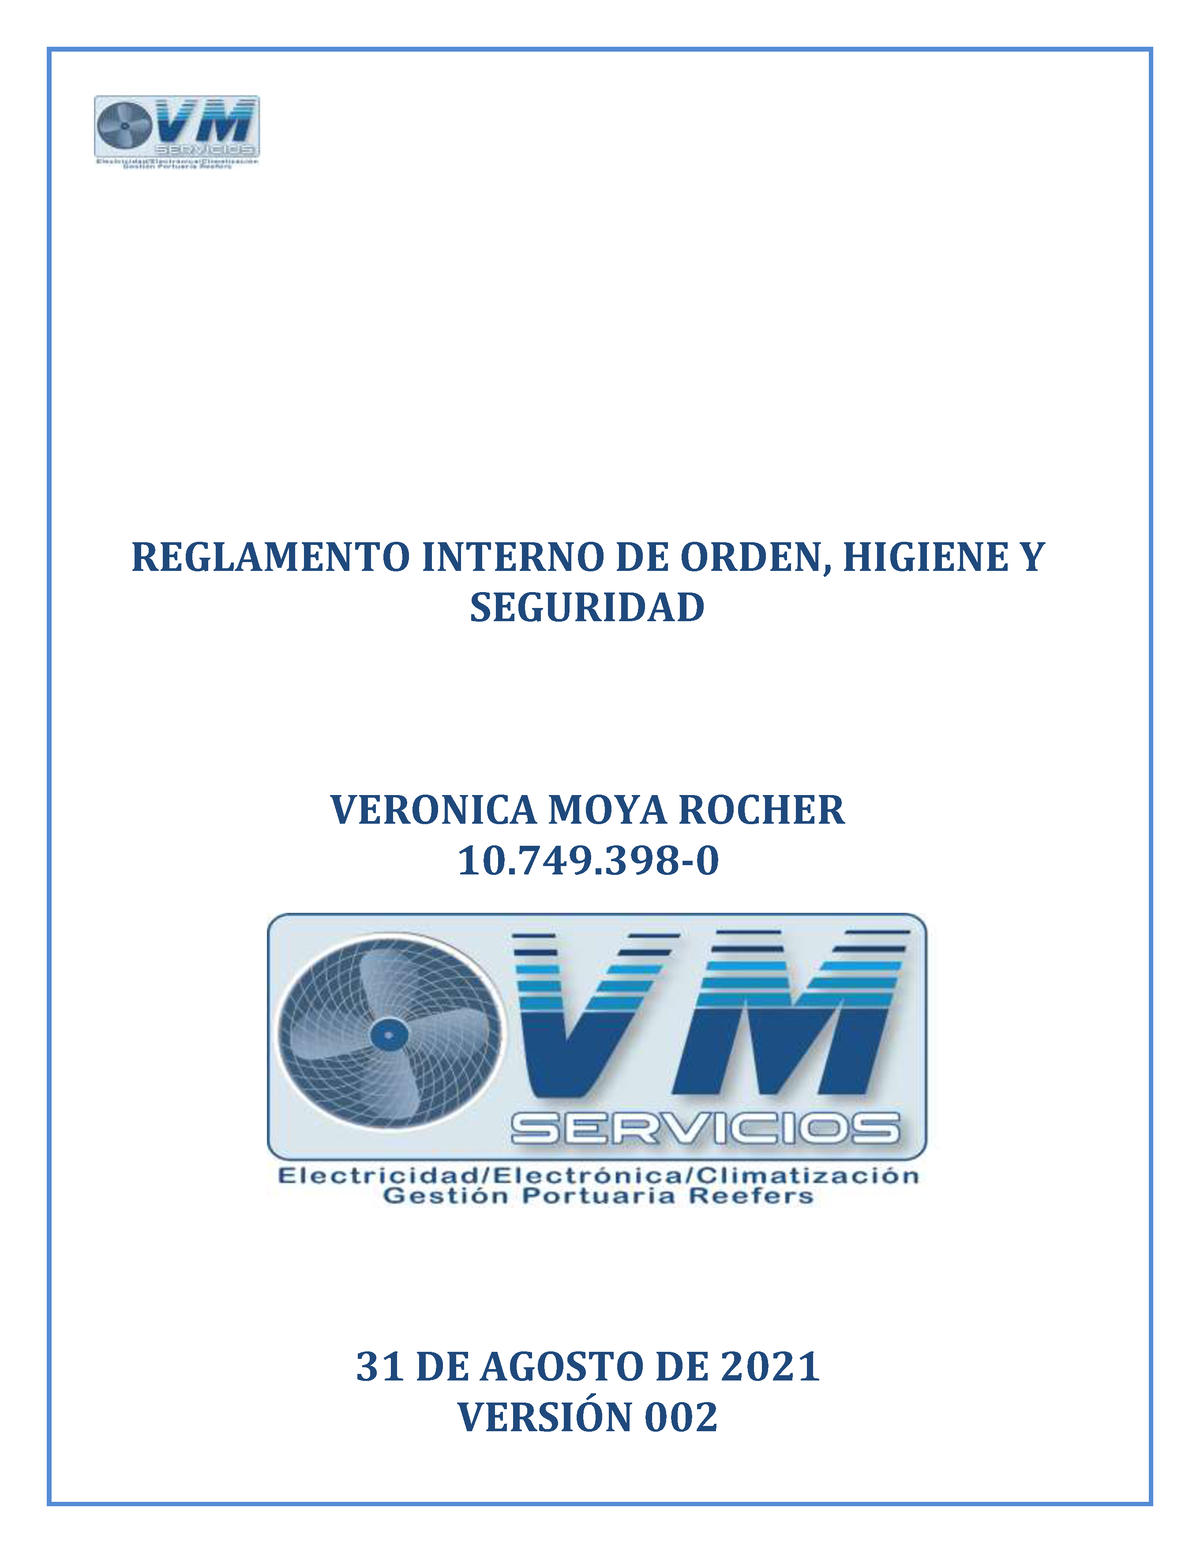 Riohs Vm Servicios 2021 Reglamento Interno De Orden Higiene Y Seguridad Veronica Moya Rocher 9204